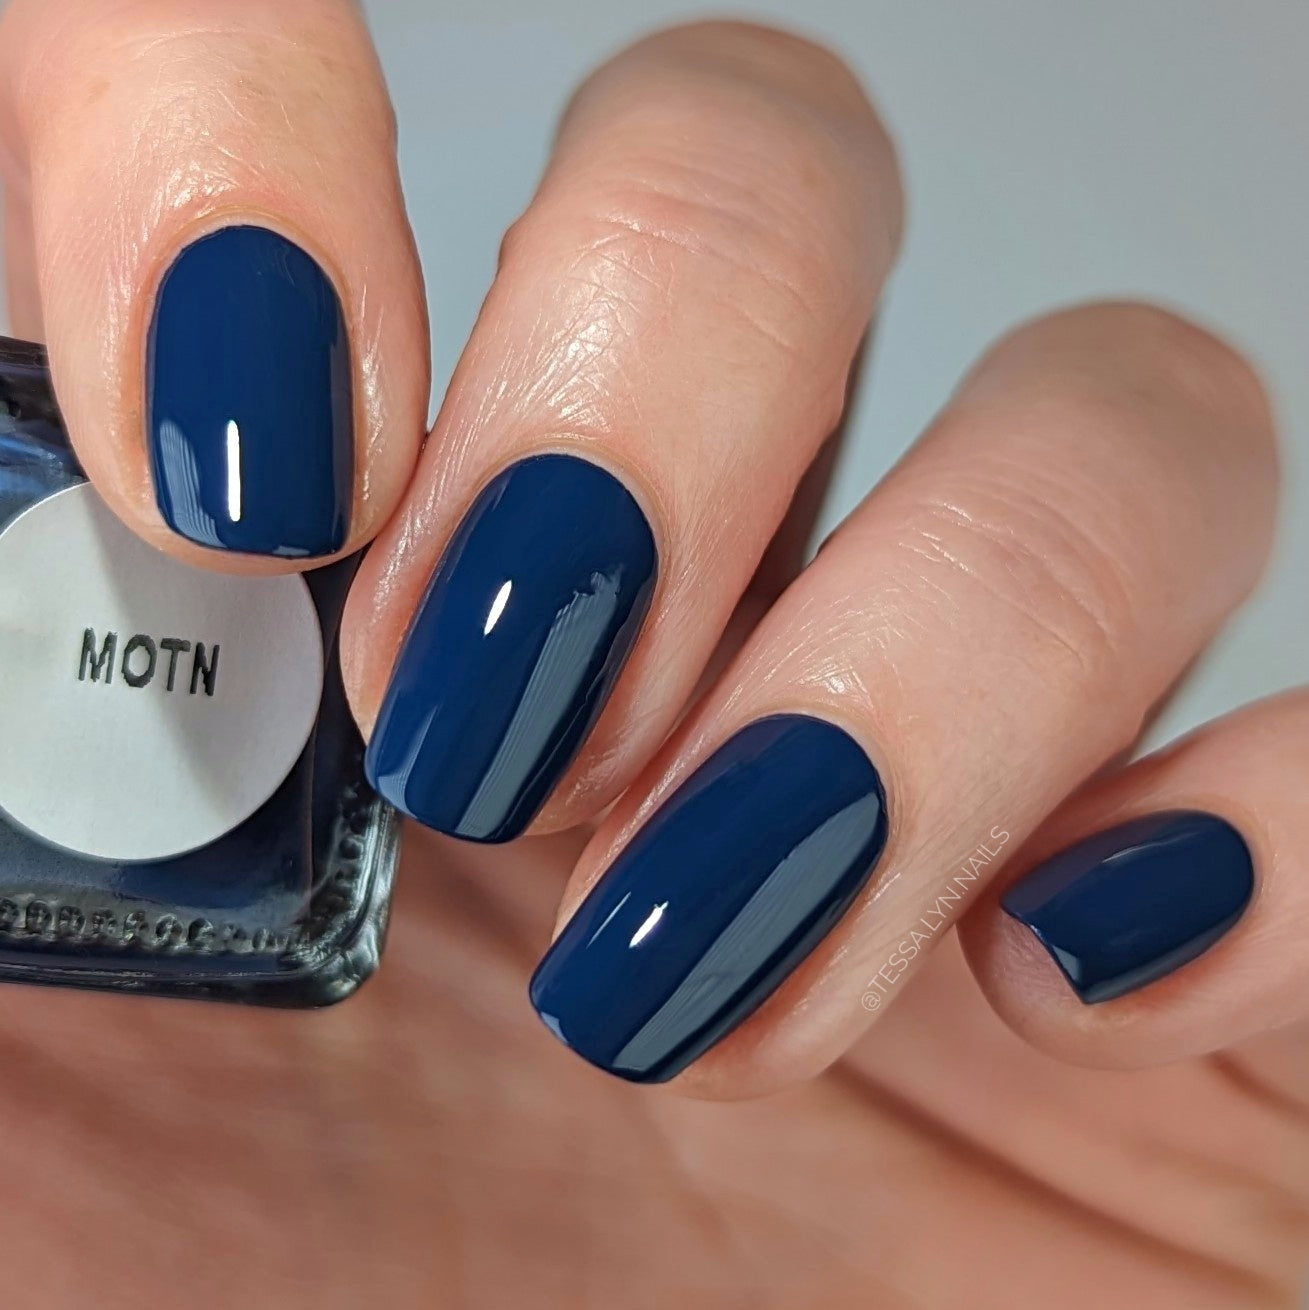 5 shades of blue 💙 | Simple nail art designs, Easy nail art, Nails